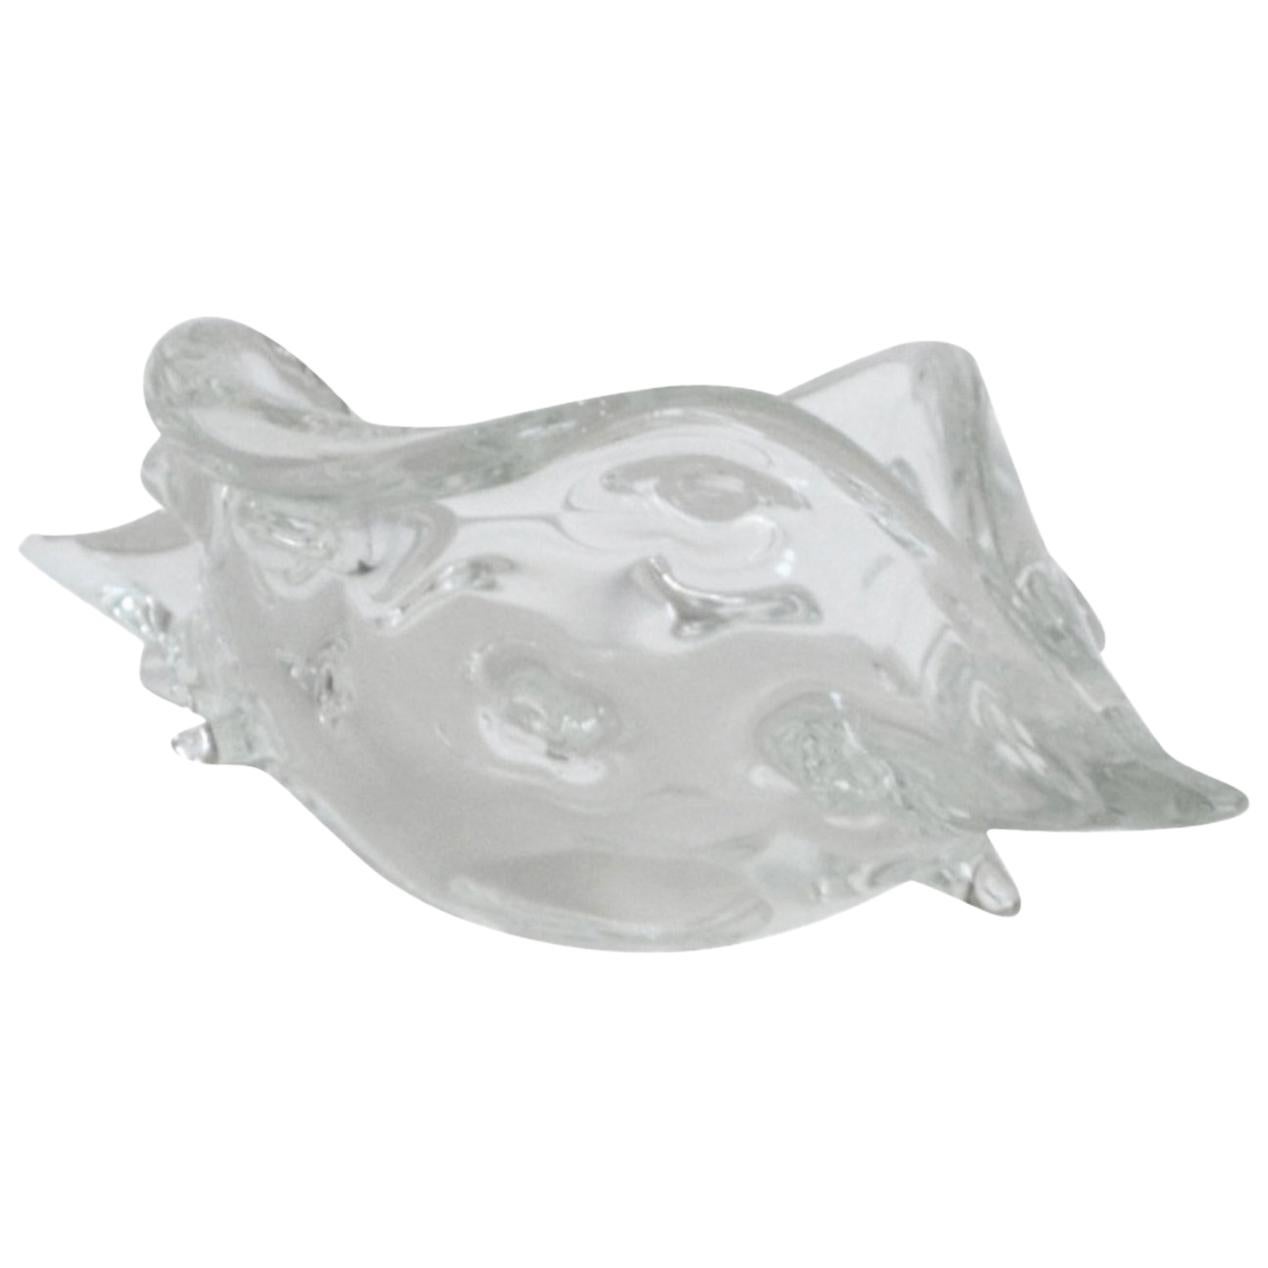 Italian Midcentury Blown Glass Shell by Licio Zanetti For Sale